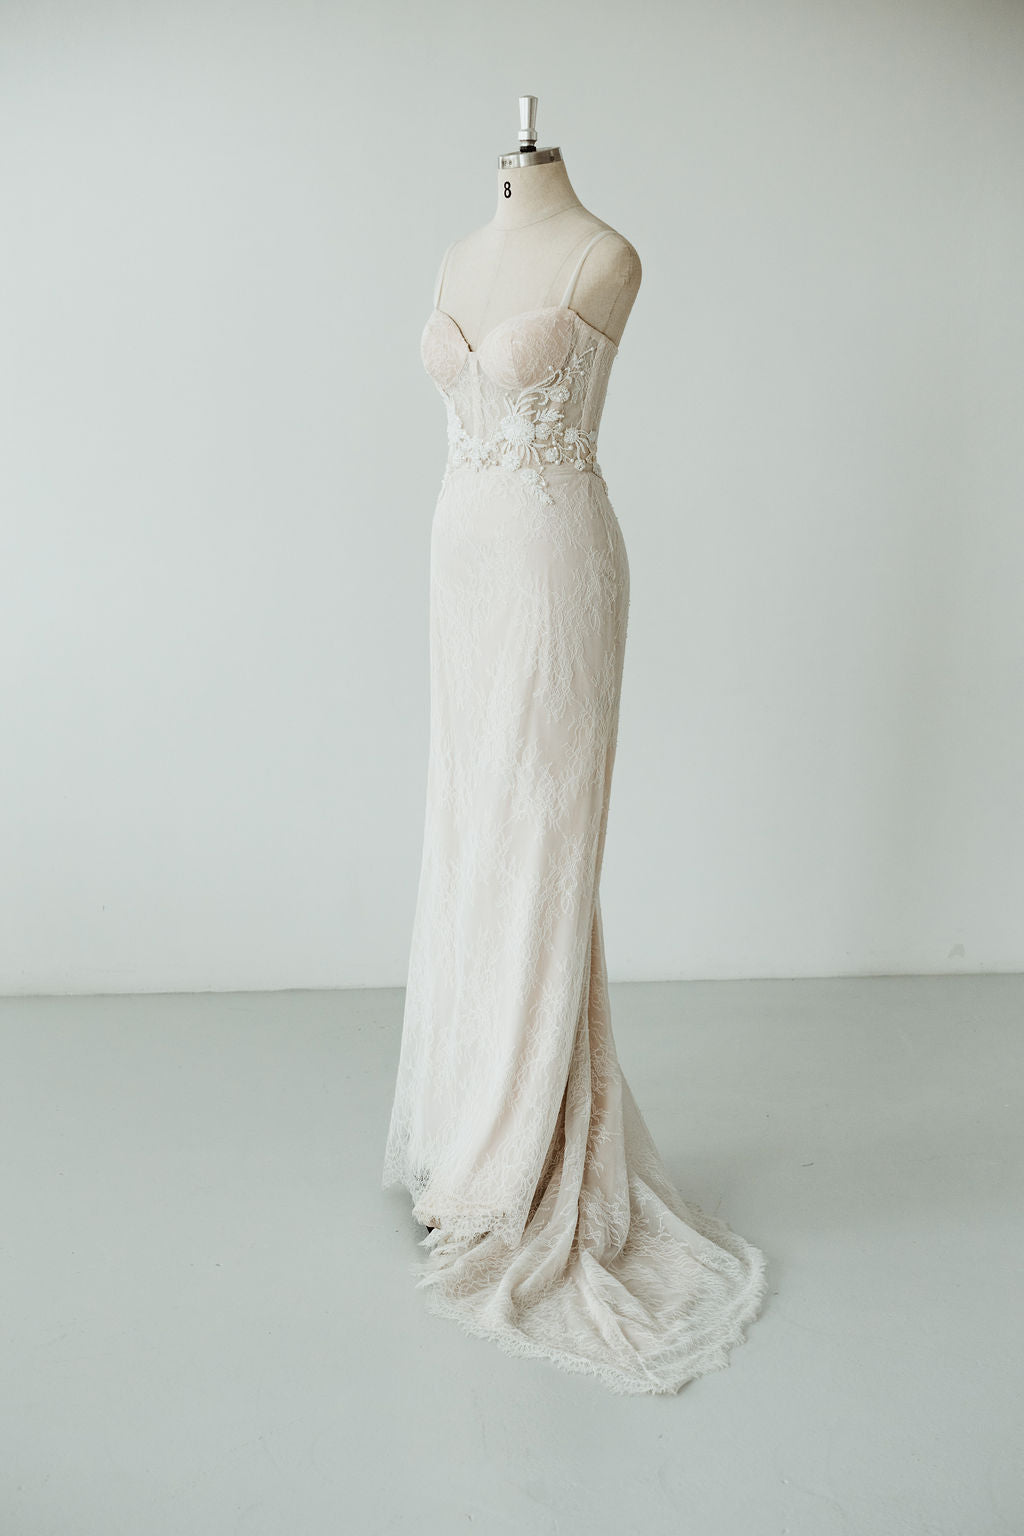 Tennyson | Dress | Sadie Bosworth Atelier